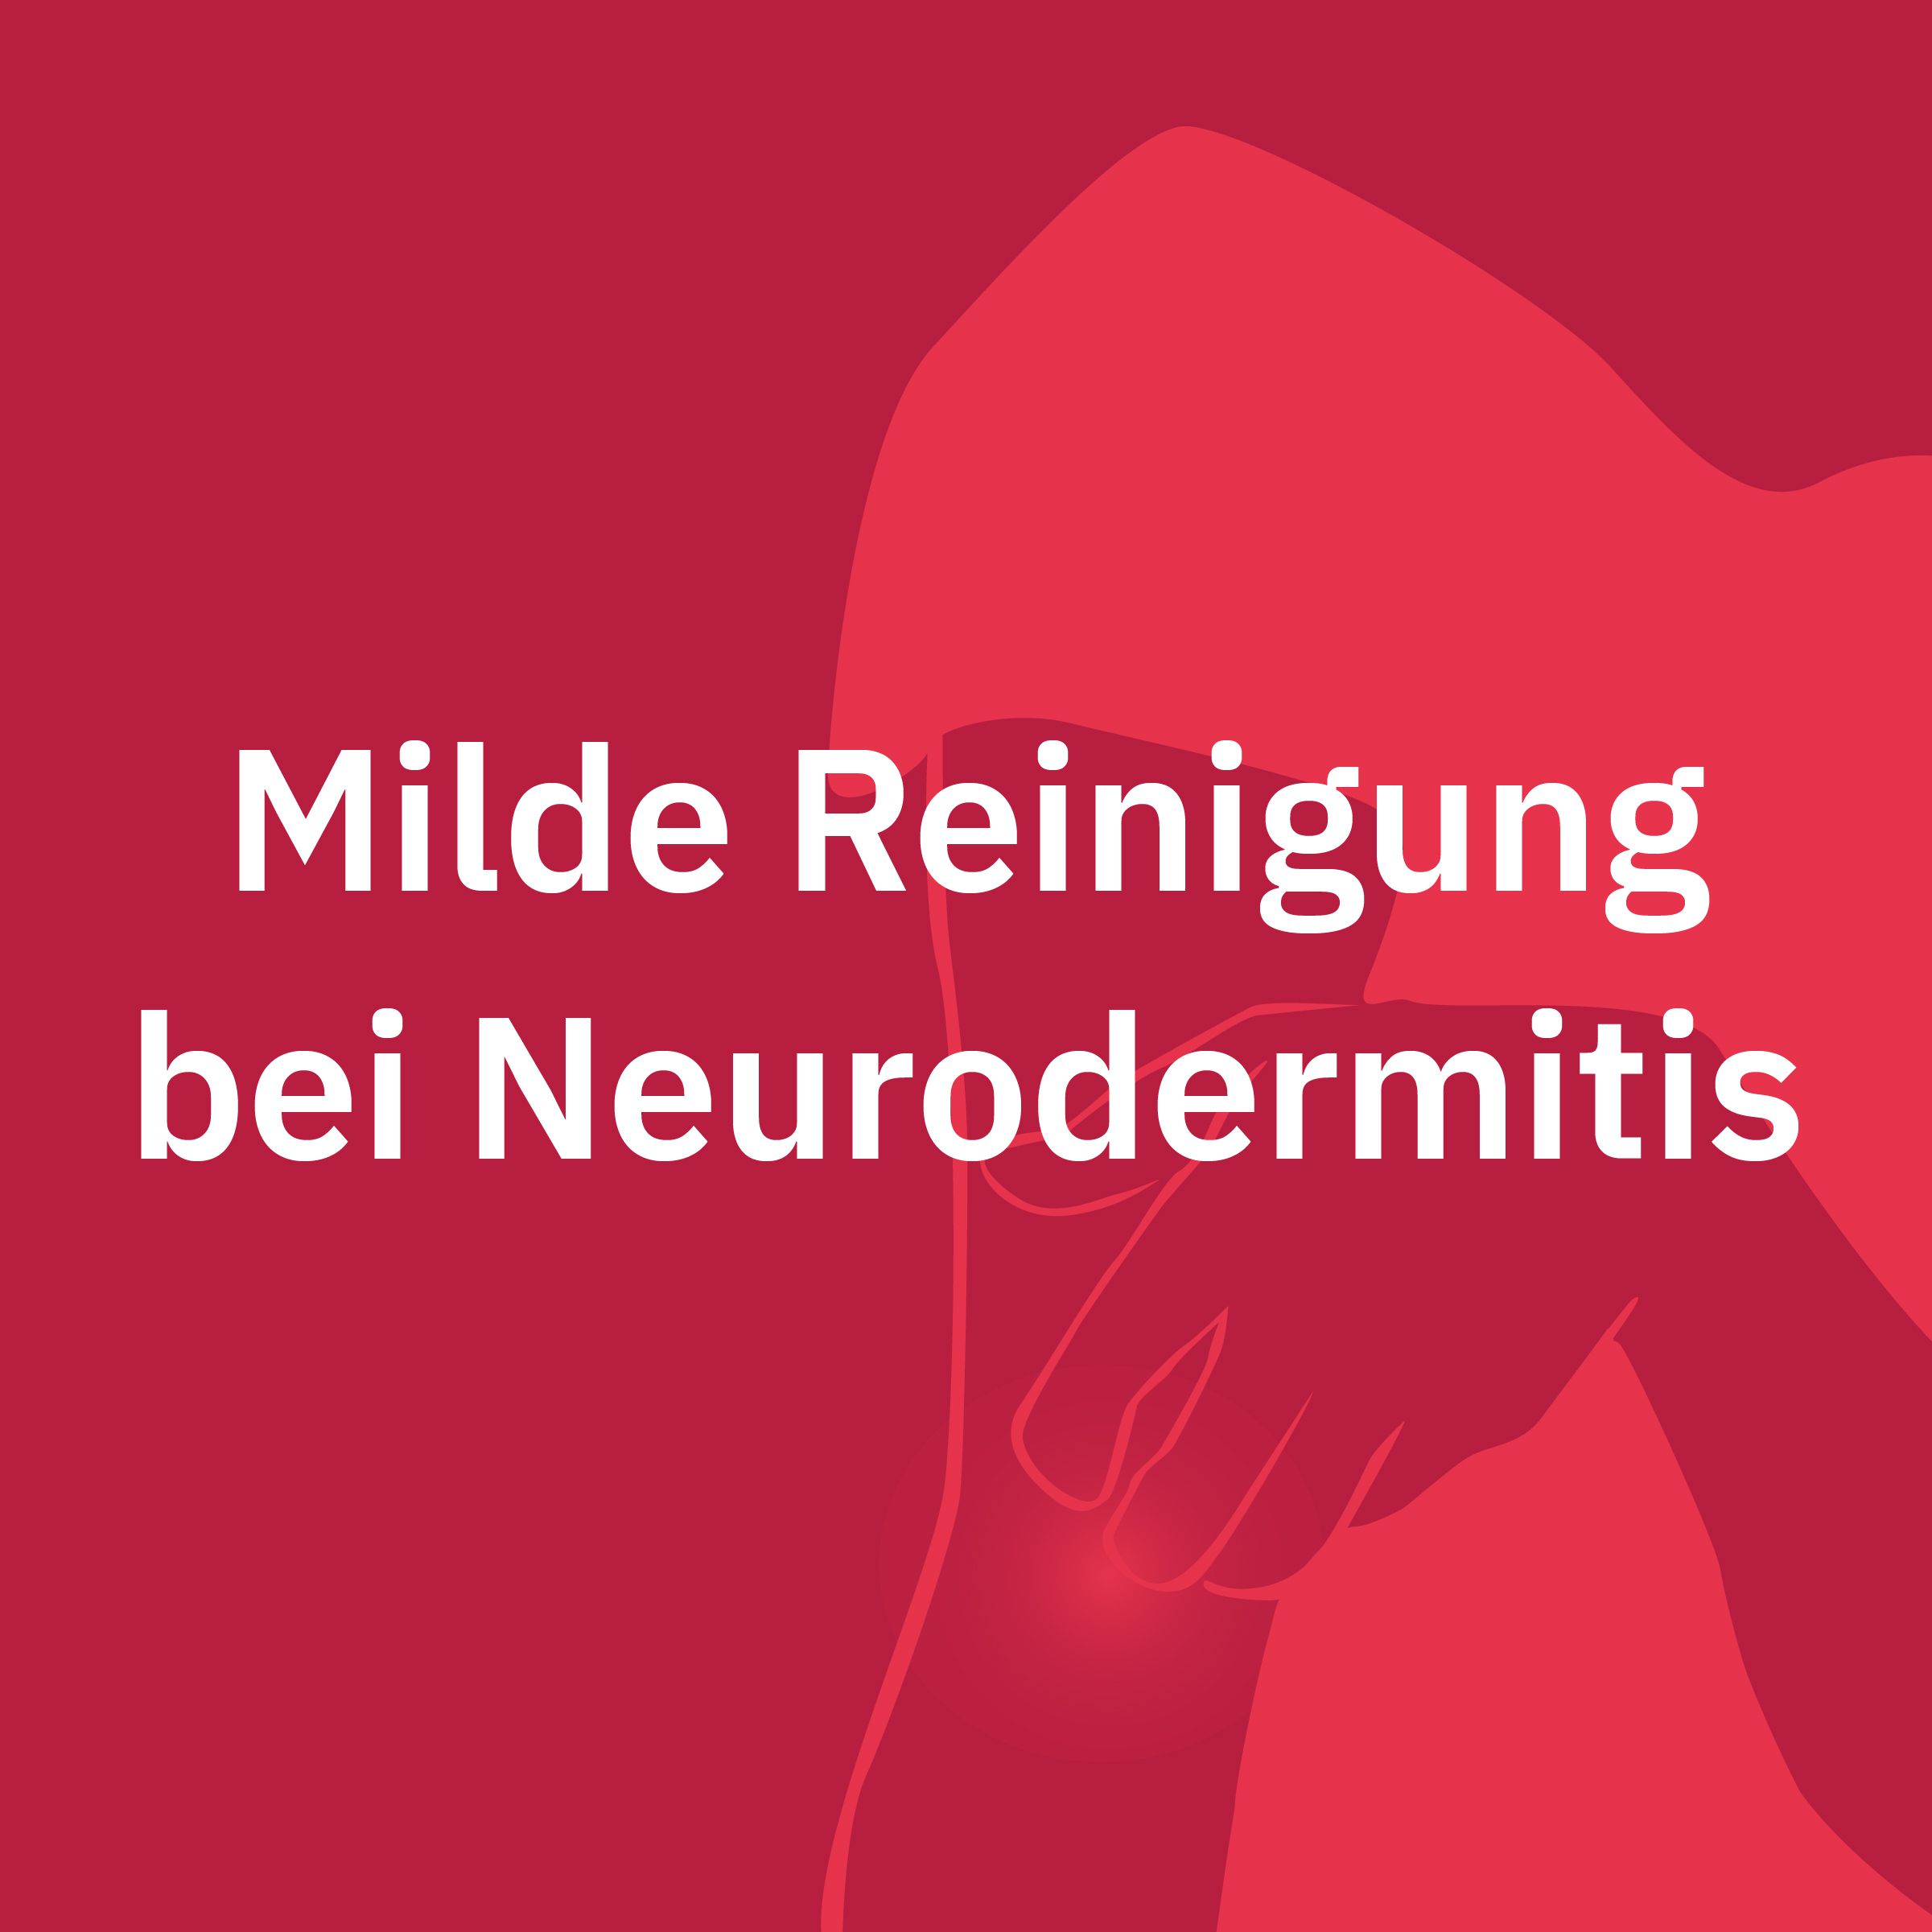 Milde Reinigung bei Neurodermitis